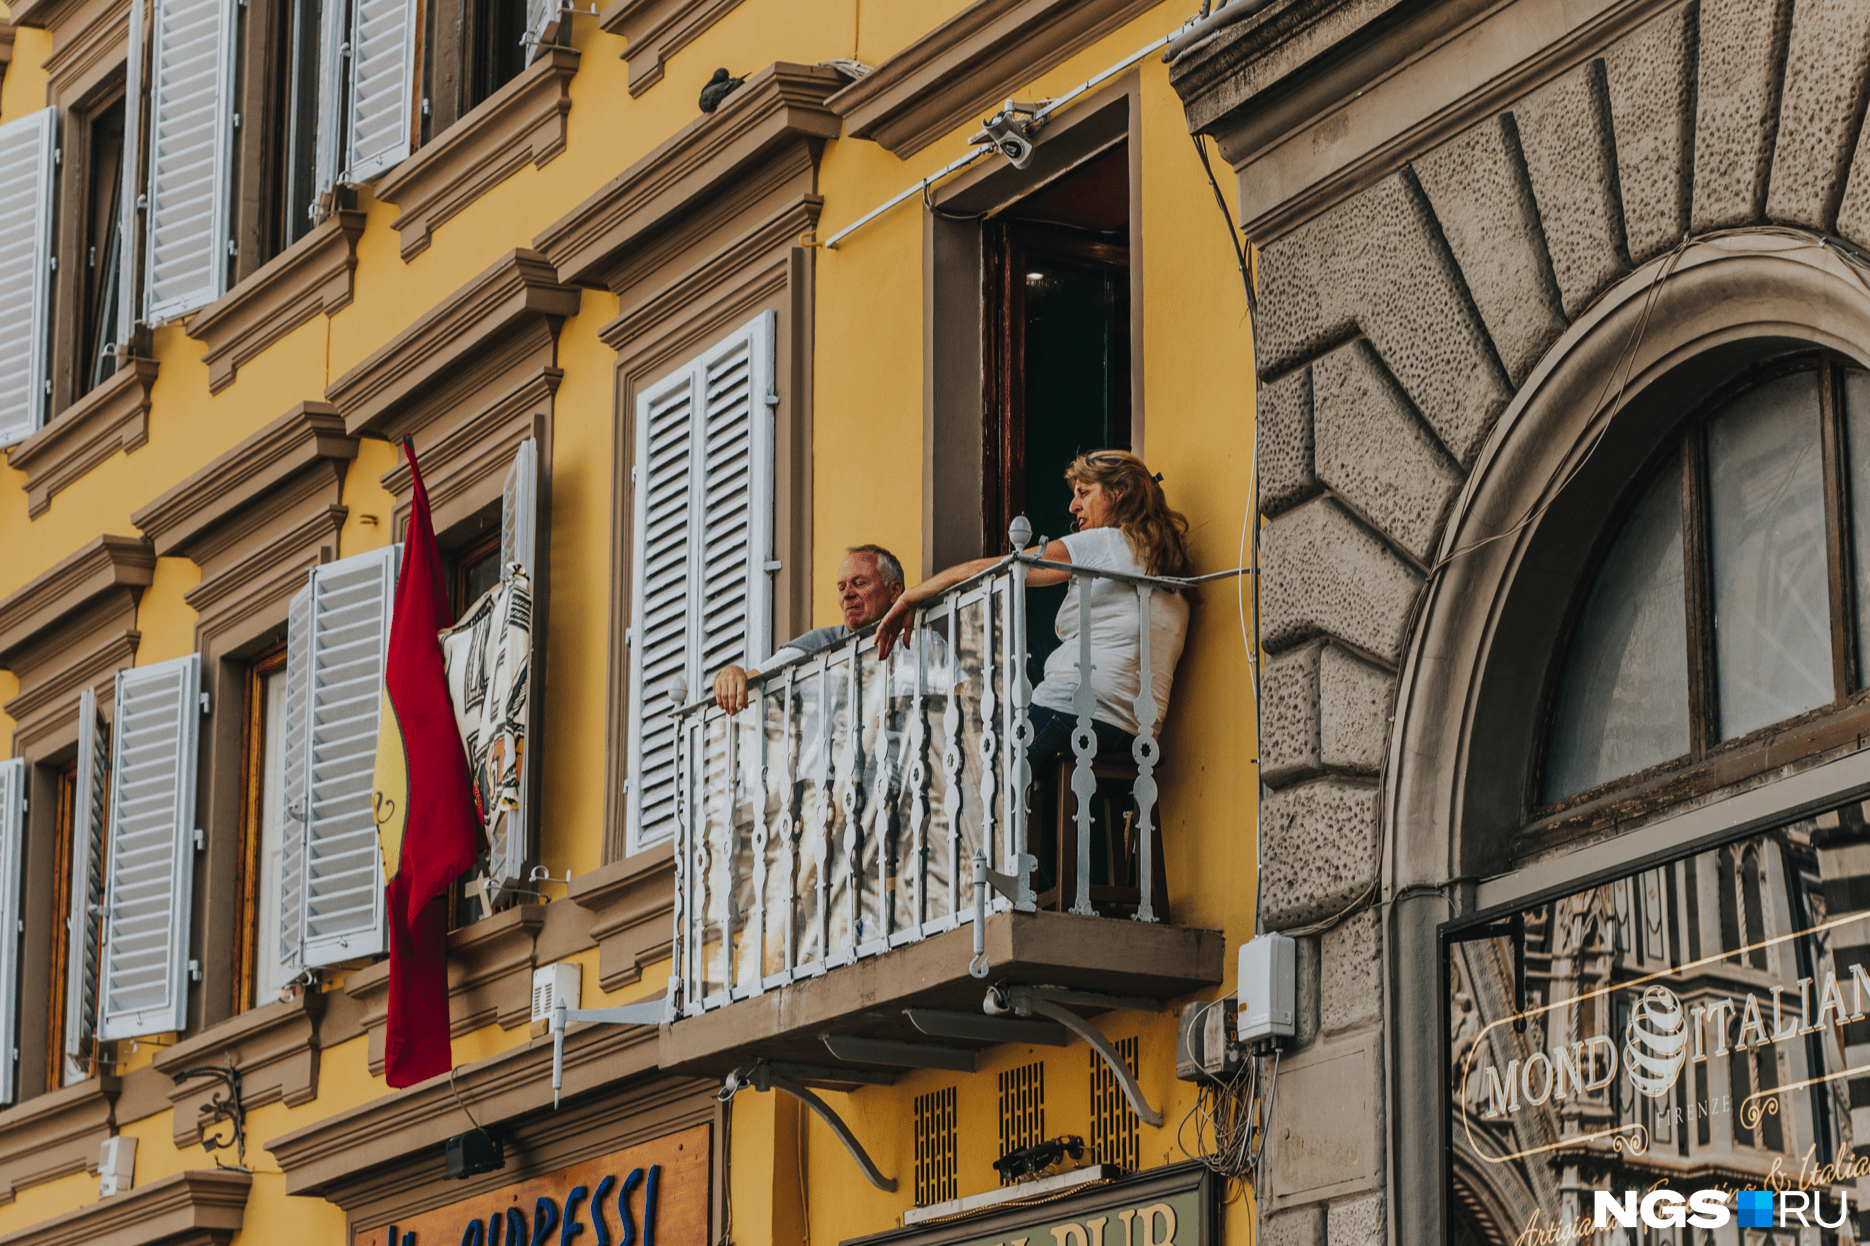 Коронавирус изменил требования итальянцев к жилью, говорит эксперт. Квартиры с балконами стали цениться выше